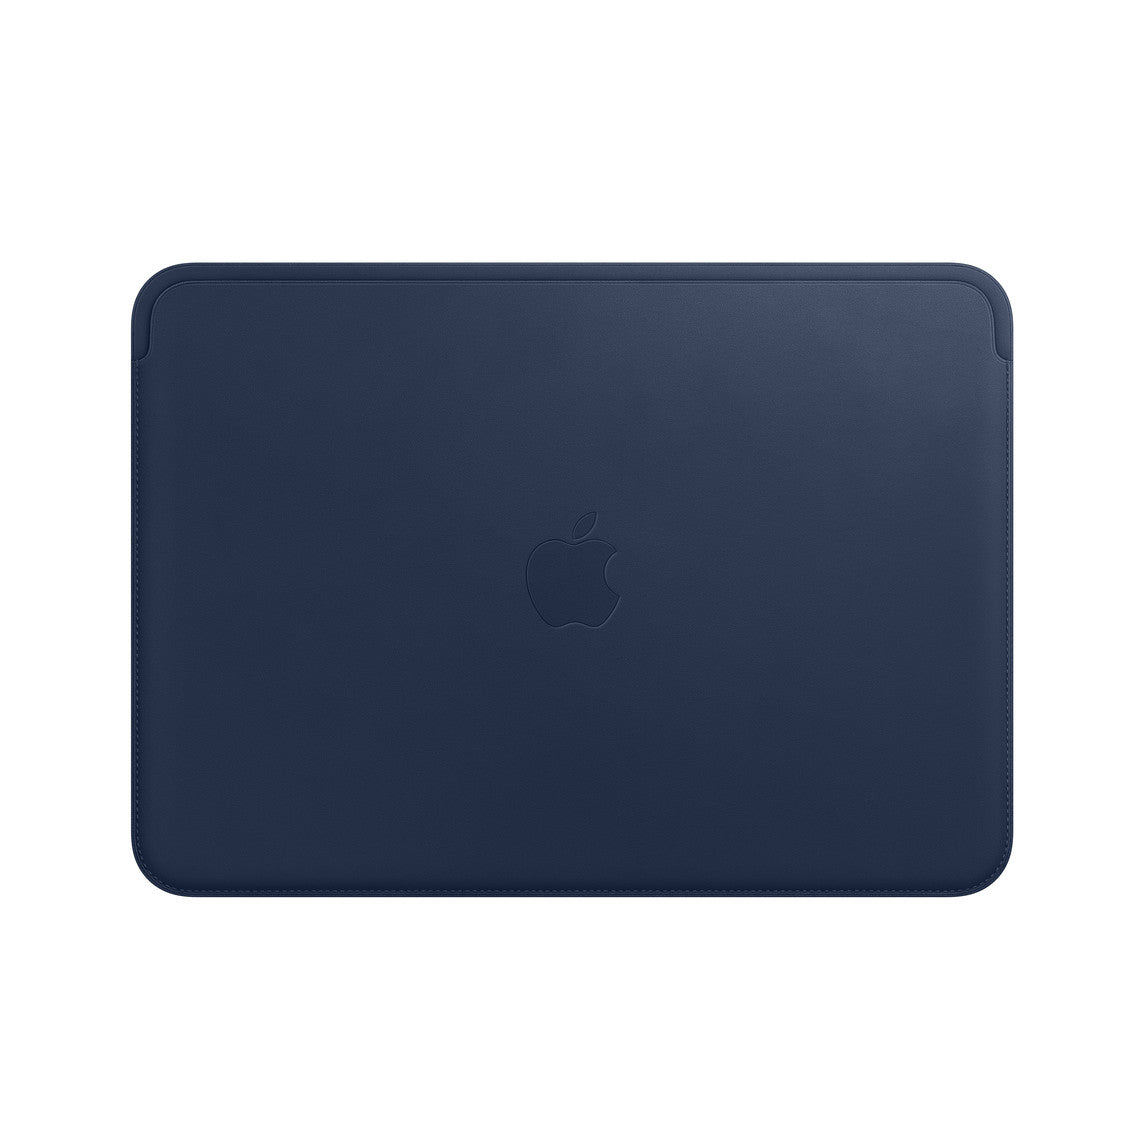 Funda de piel para el MacBook Pro y MacBook Air de 13 pulgadas - Azul noche